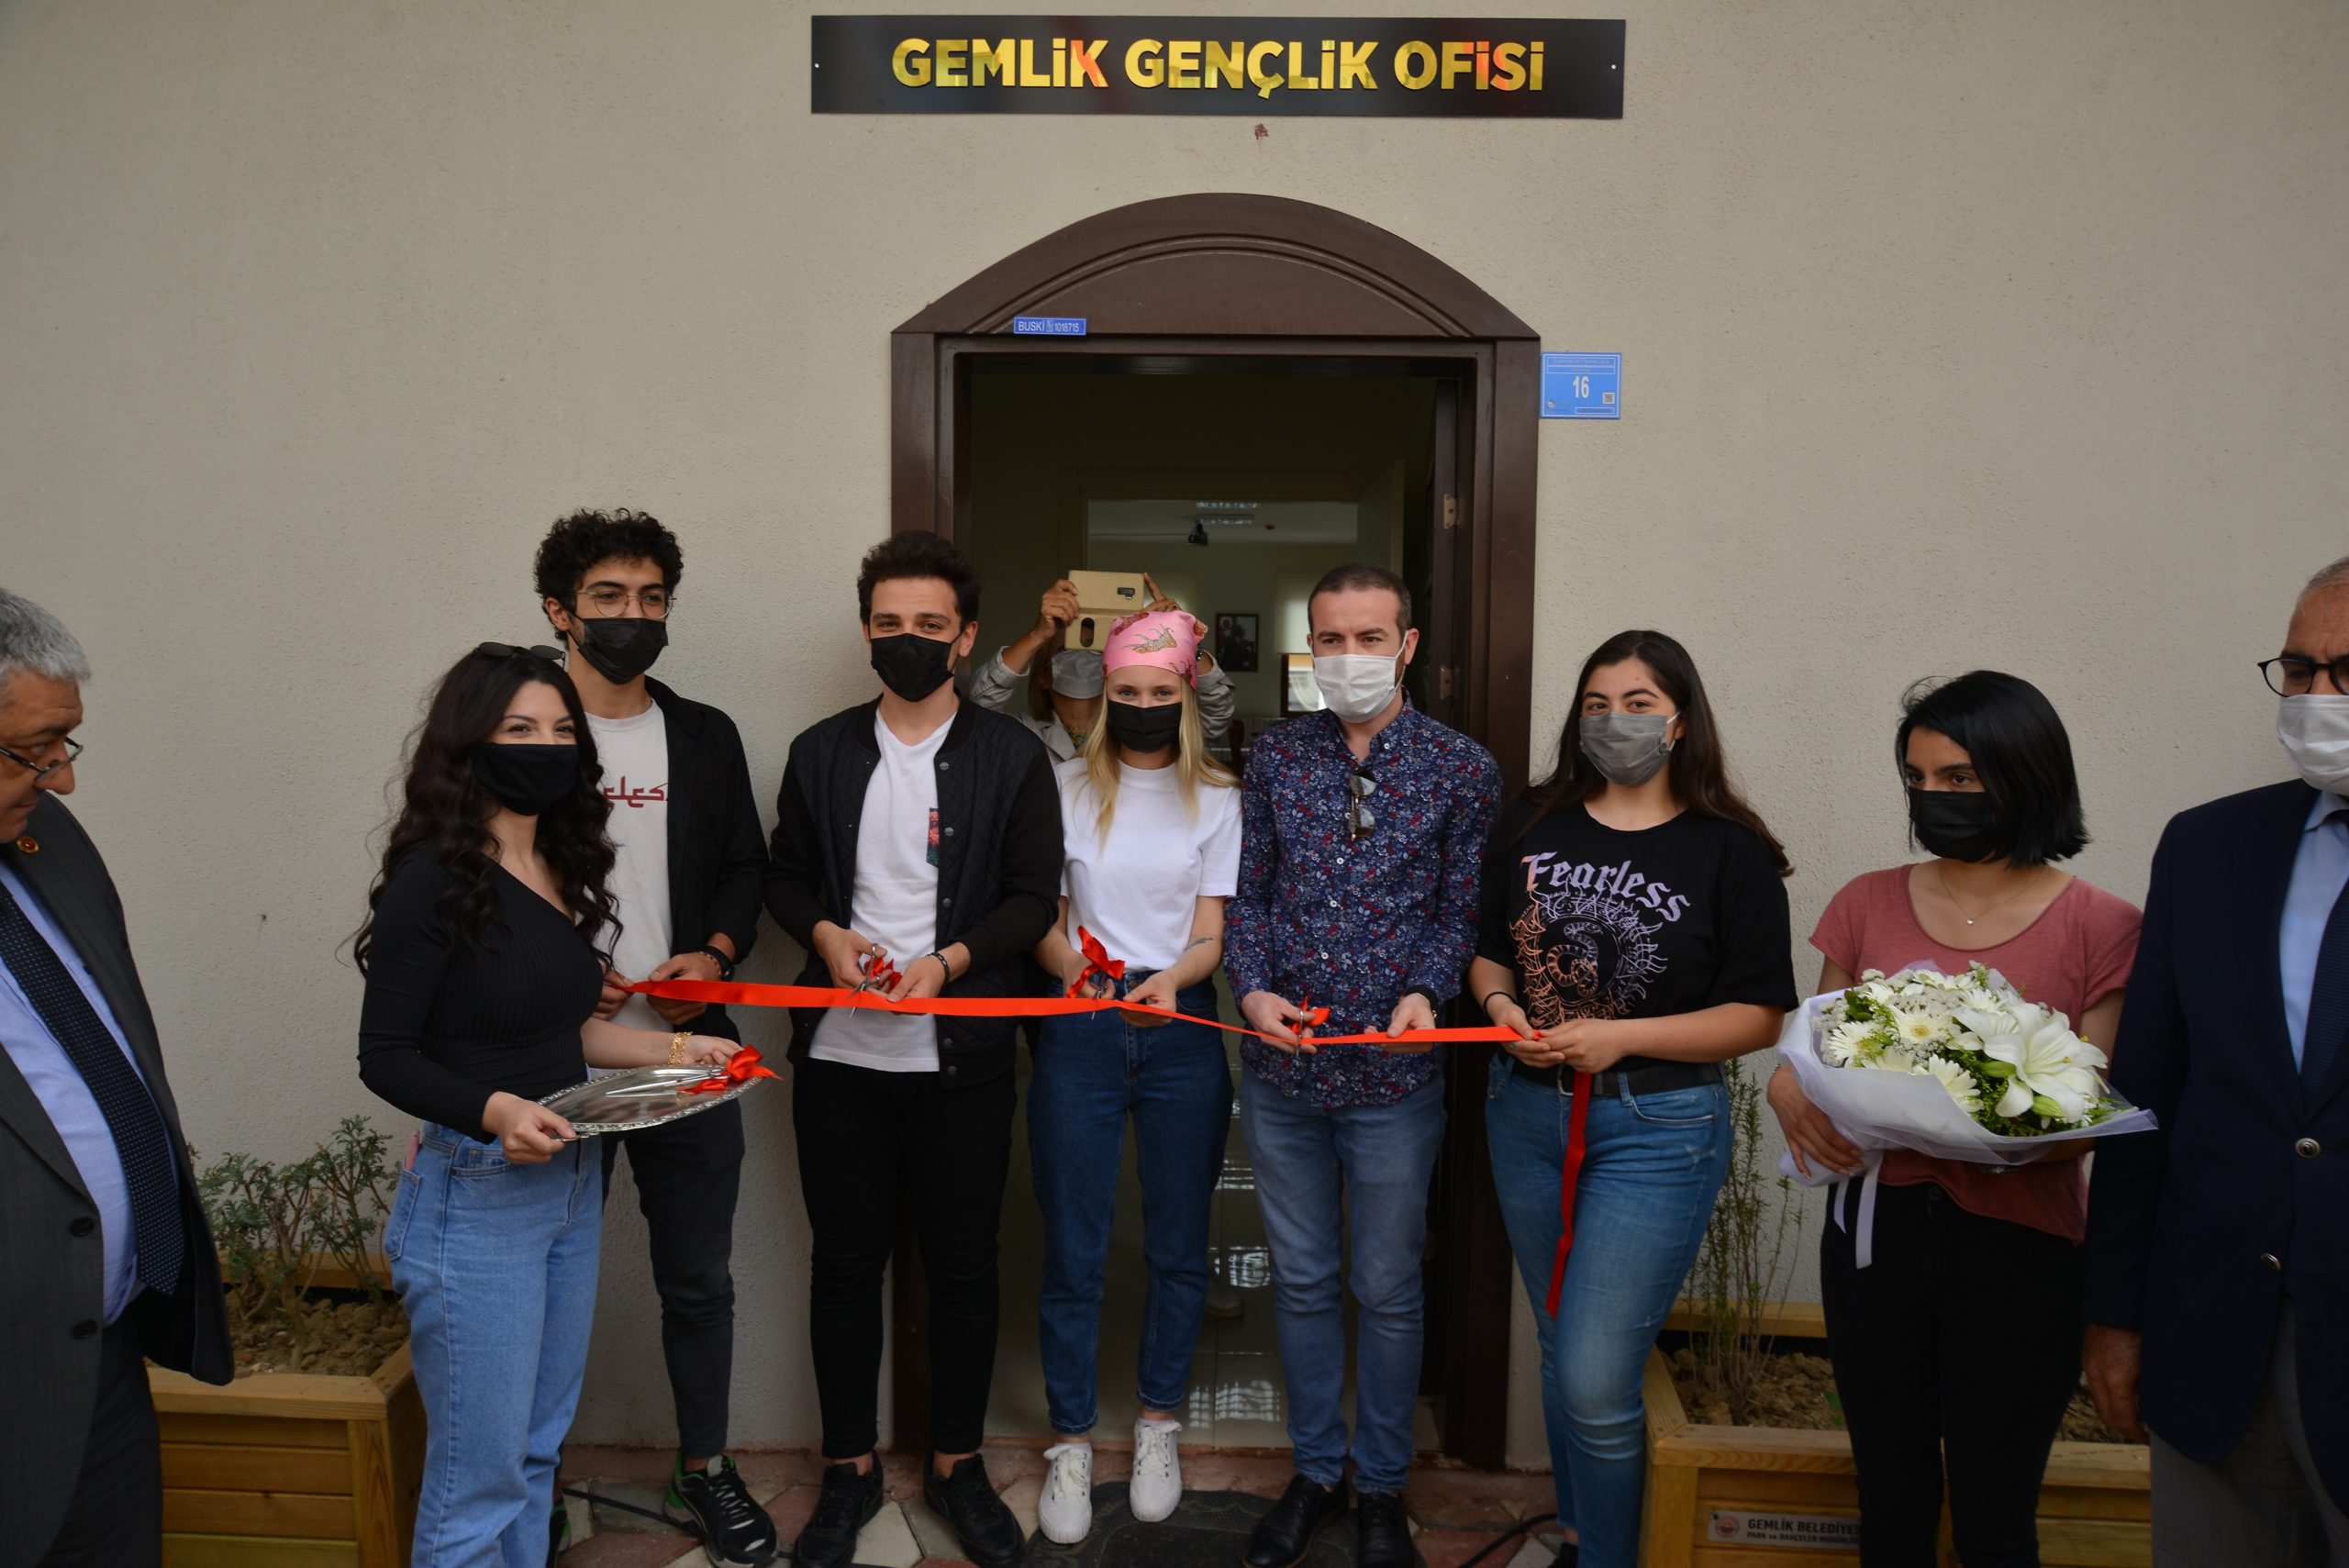  Gemlik’te Gençlerin Buluşma Noktası Gençlik Ofisi Açıldı